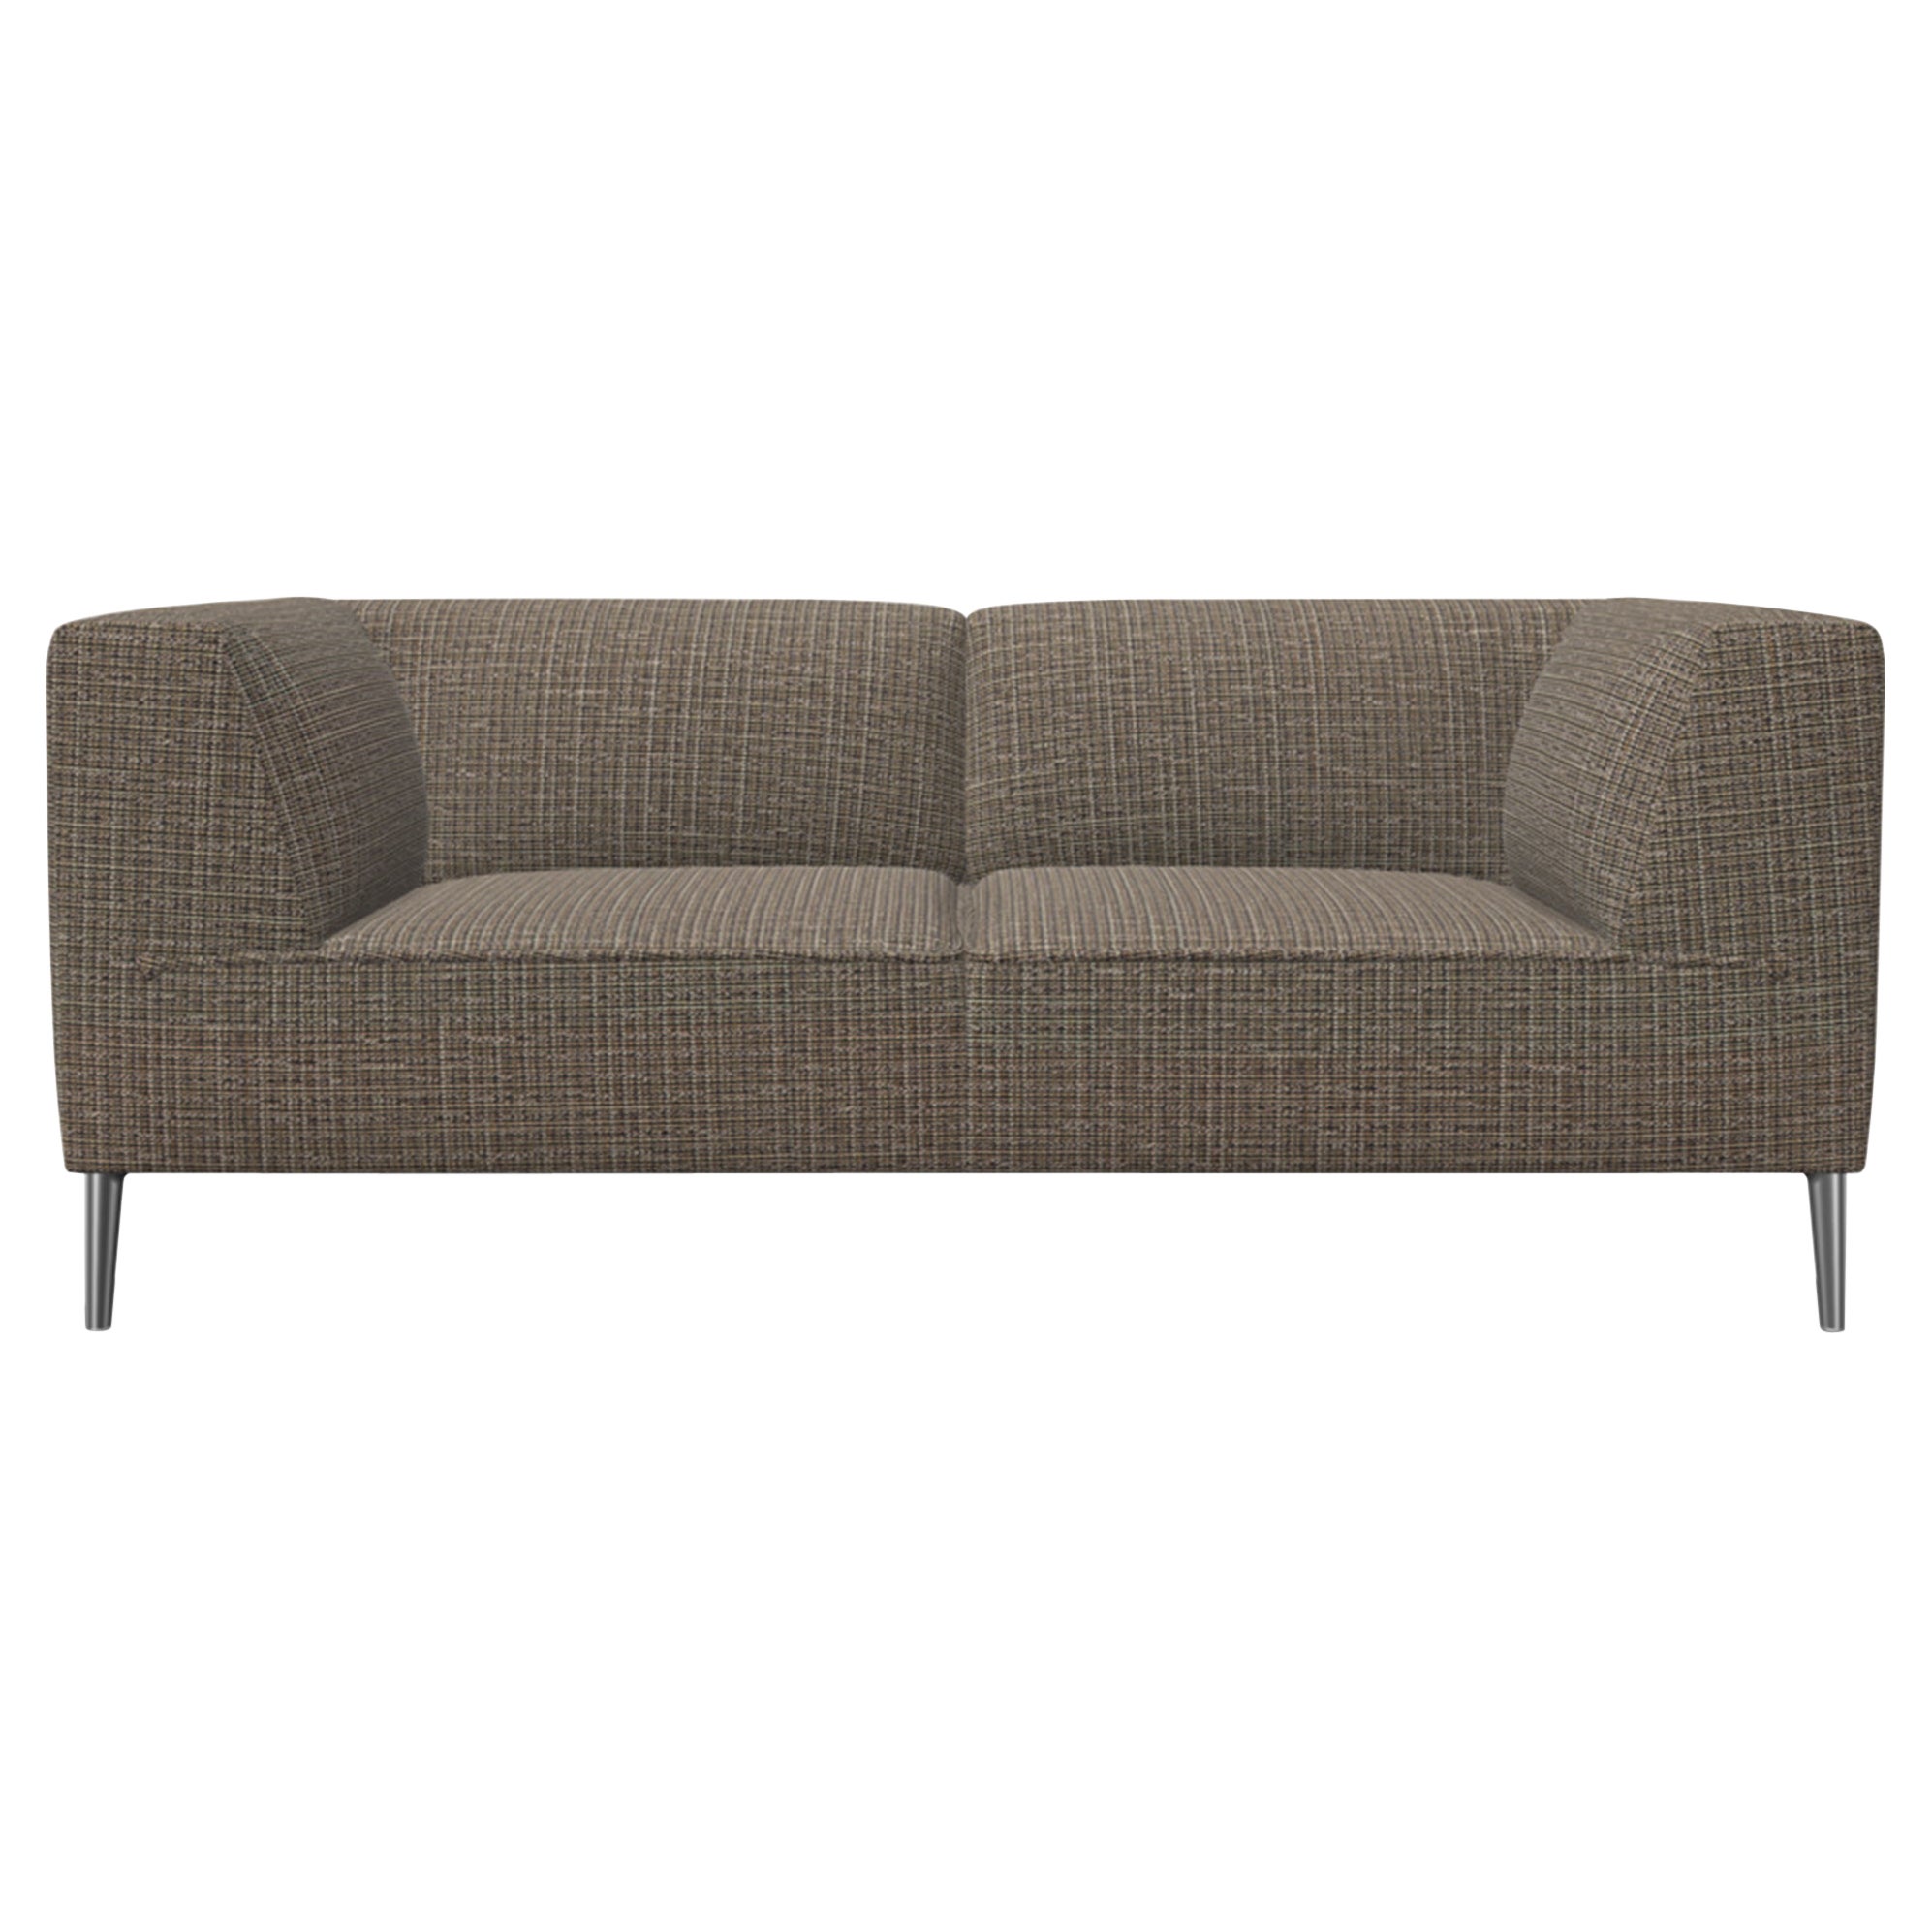 Moooi Zweisitziges Sofa So Good mit brauner Polsterung und polierten Aluminiumfüßen